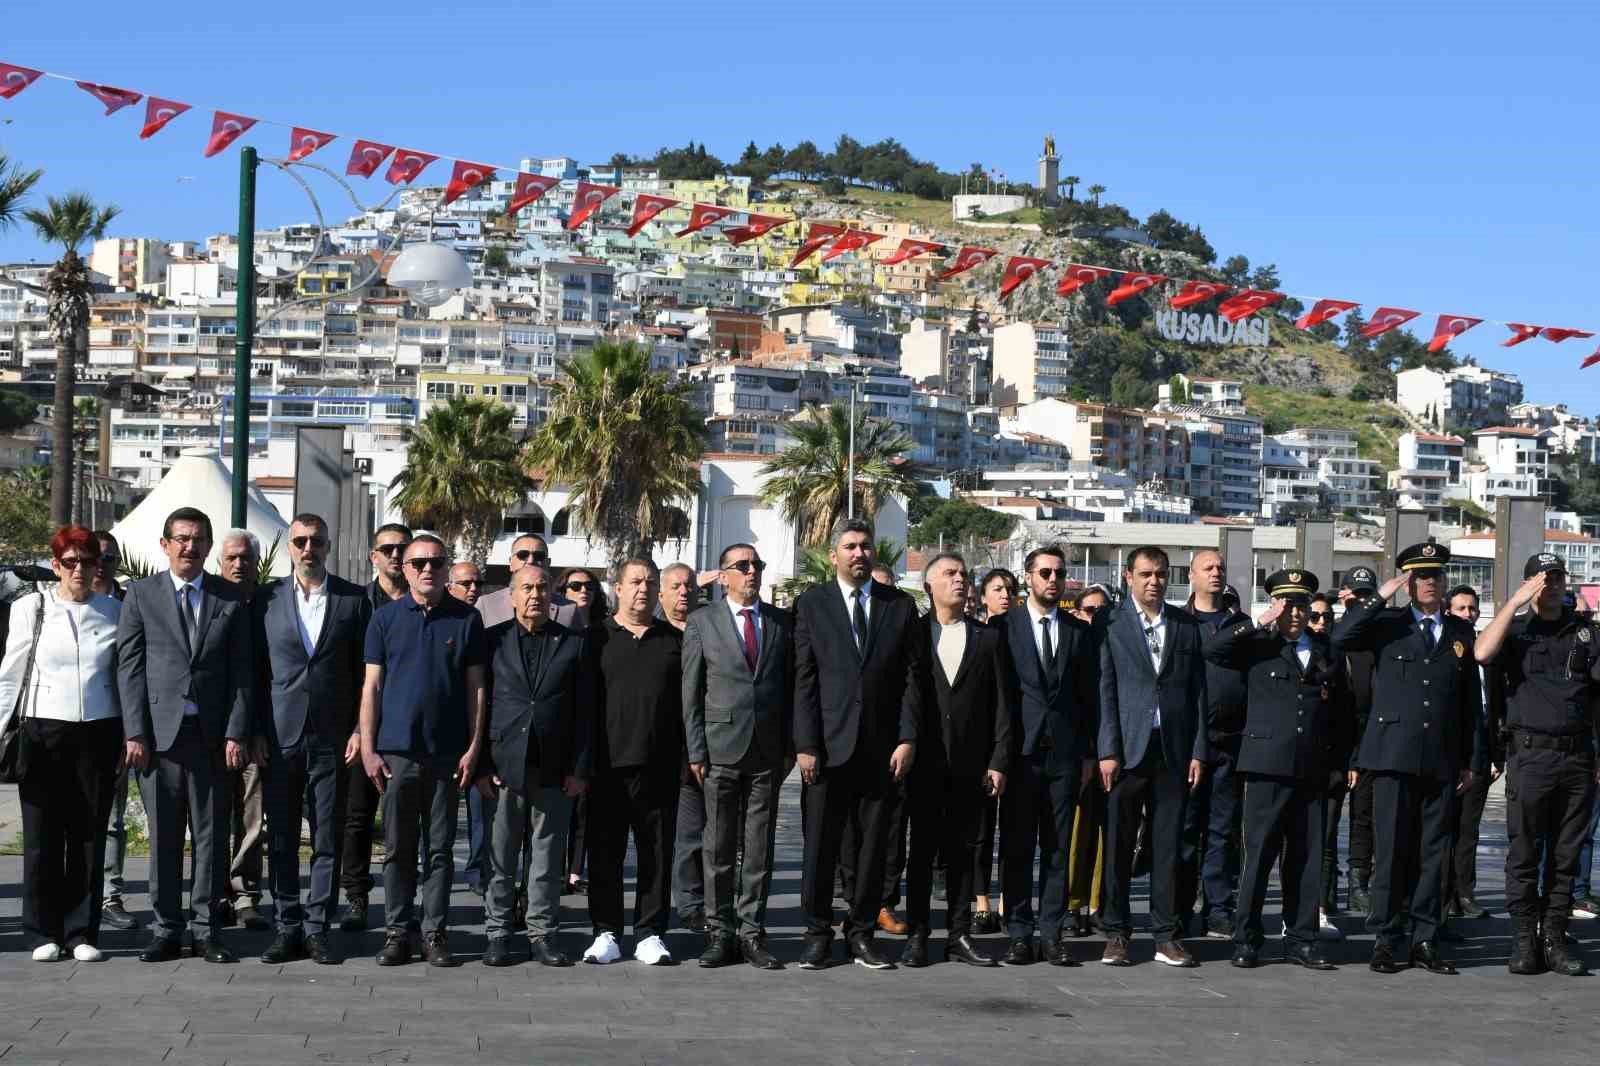 Kuşadası’nda Türk Polis Teşkilatı’nın 179’uncu kuruluş yıl dönümü kutlandı
